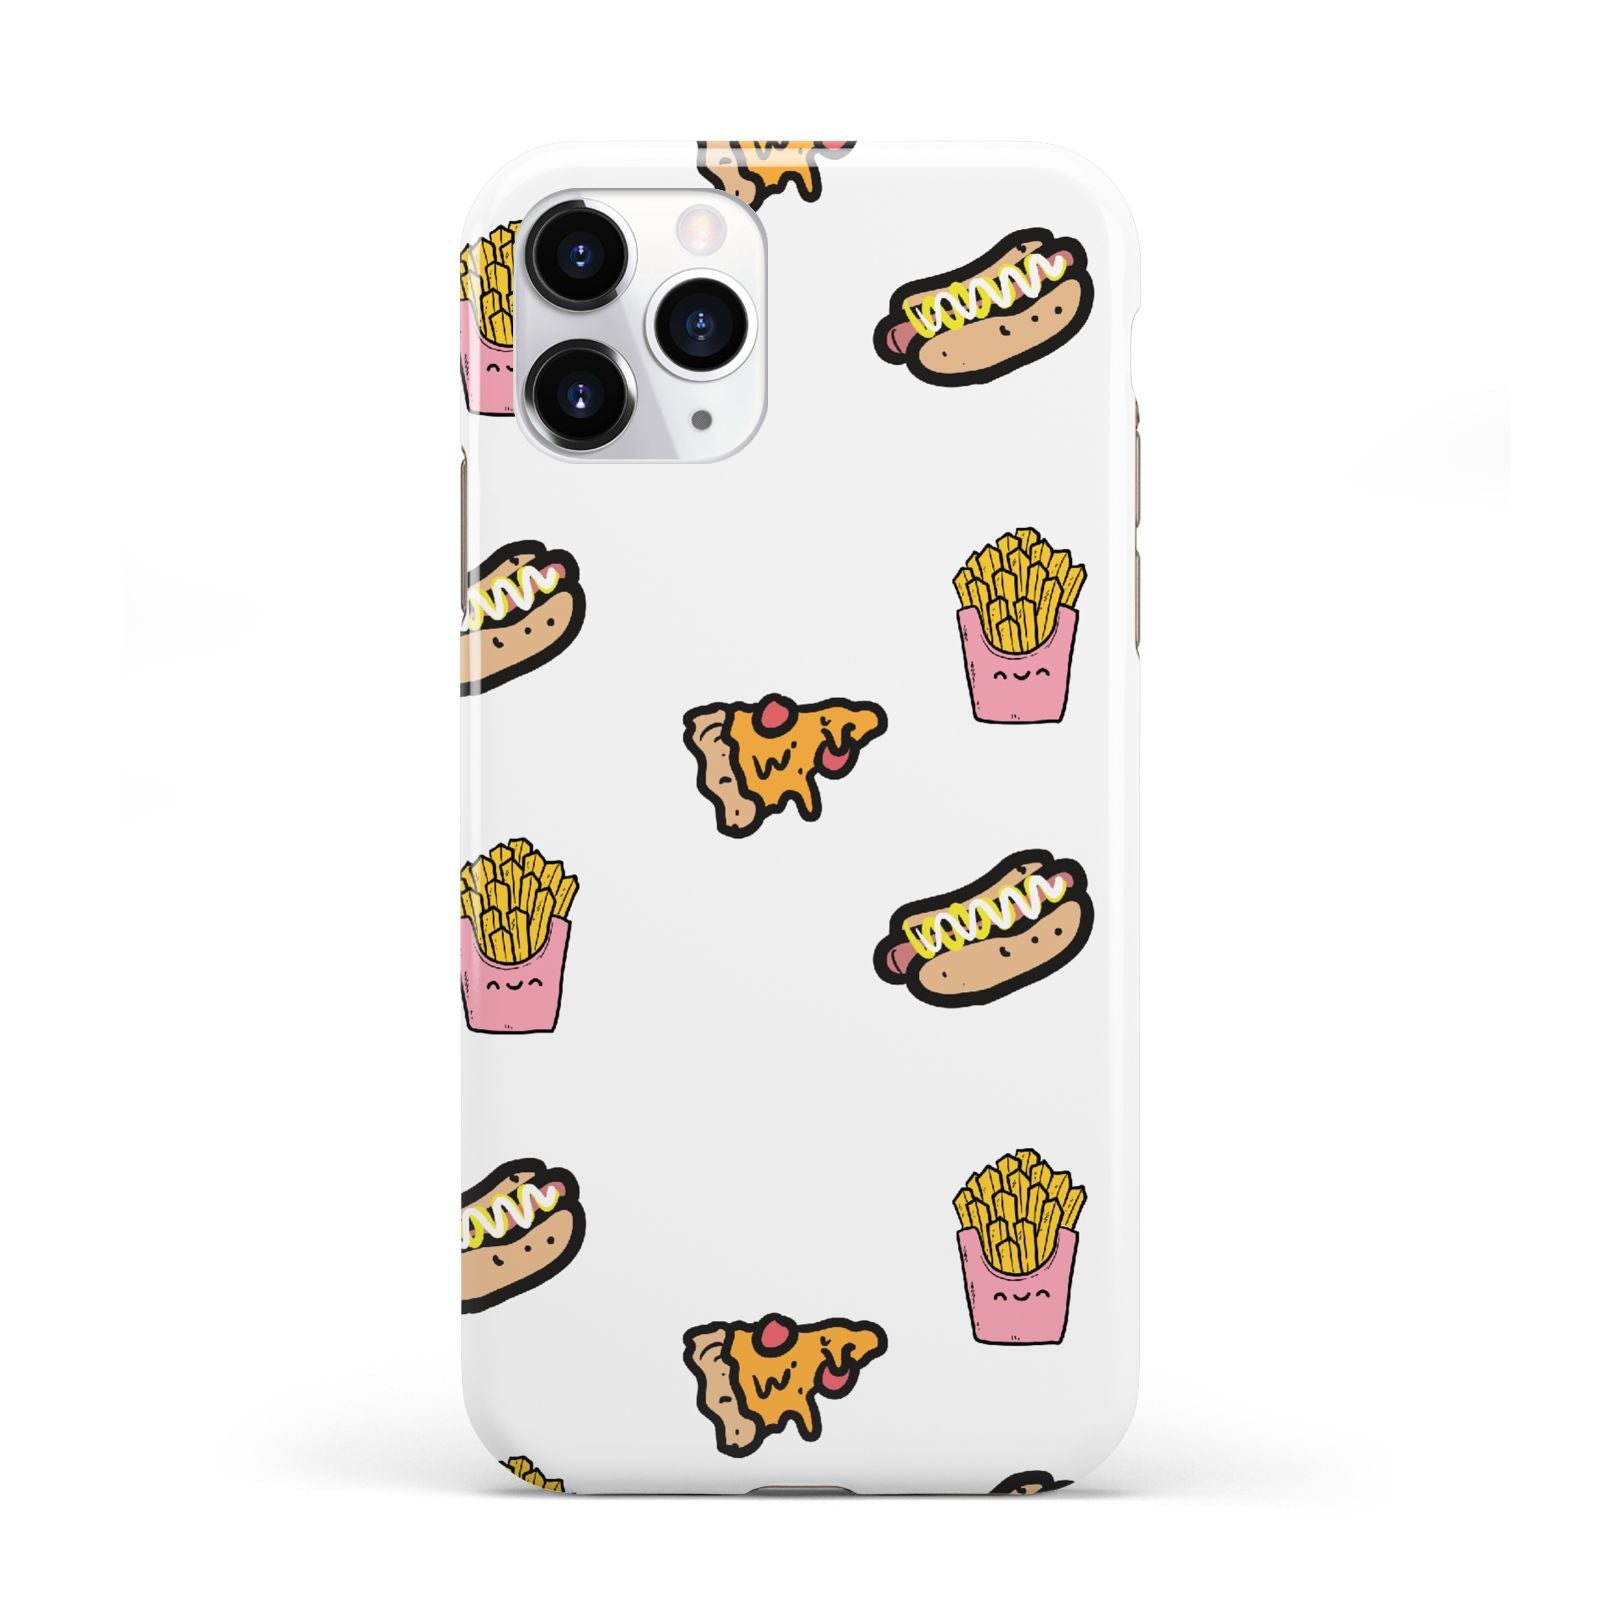 Fries Pizza Hot Dog iPhone 11 Pro 3D Tough Case